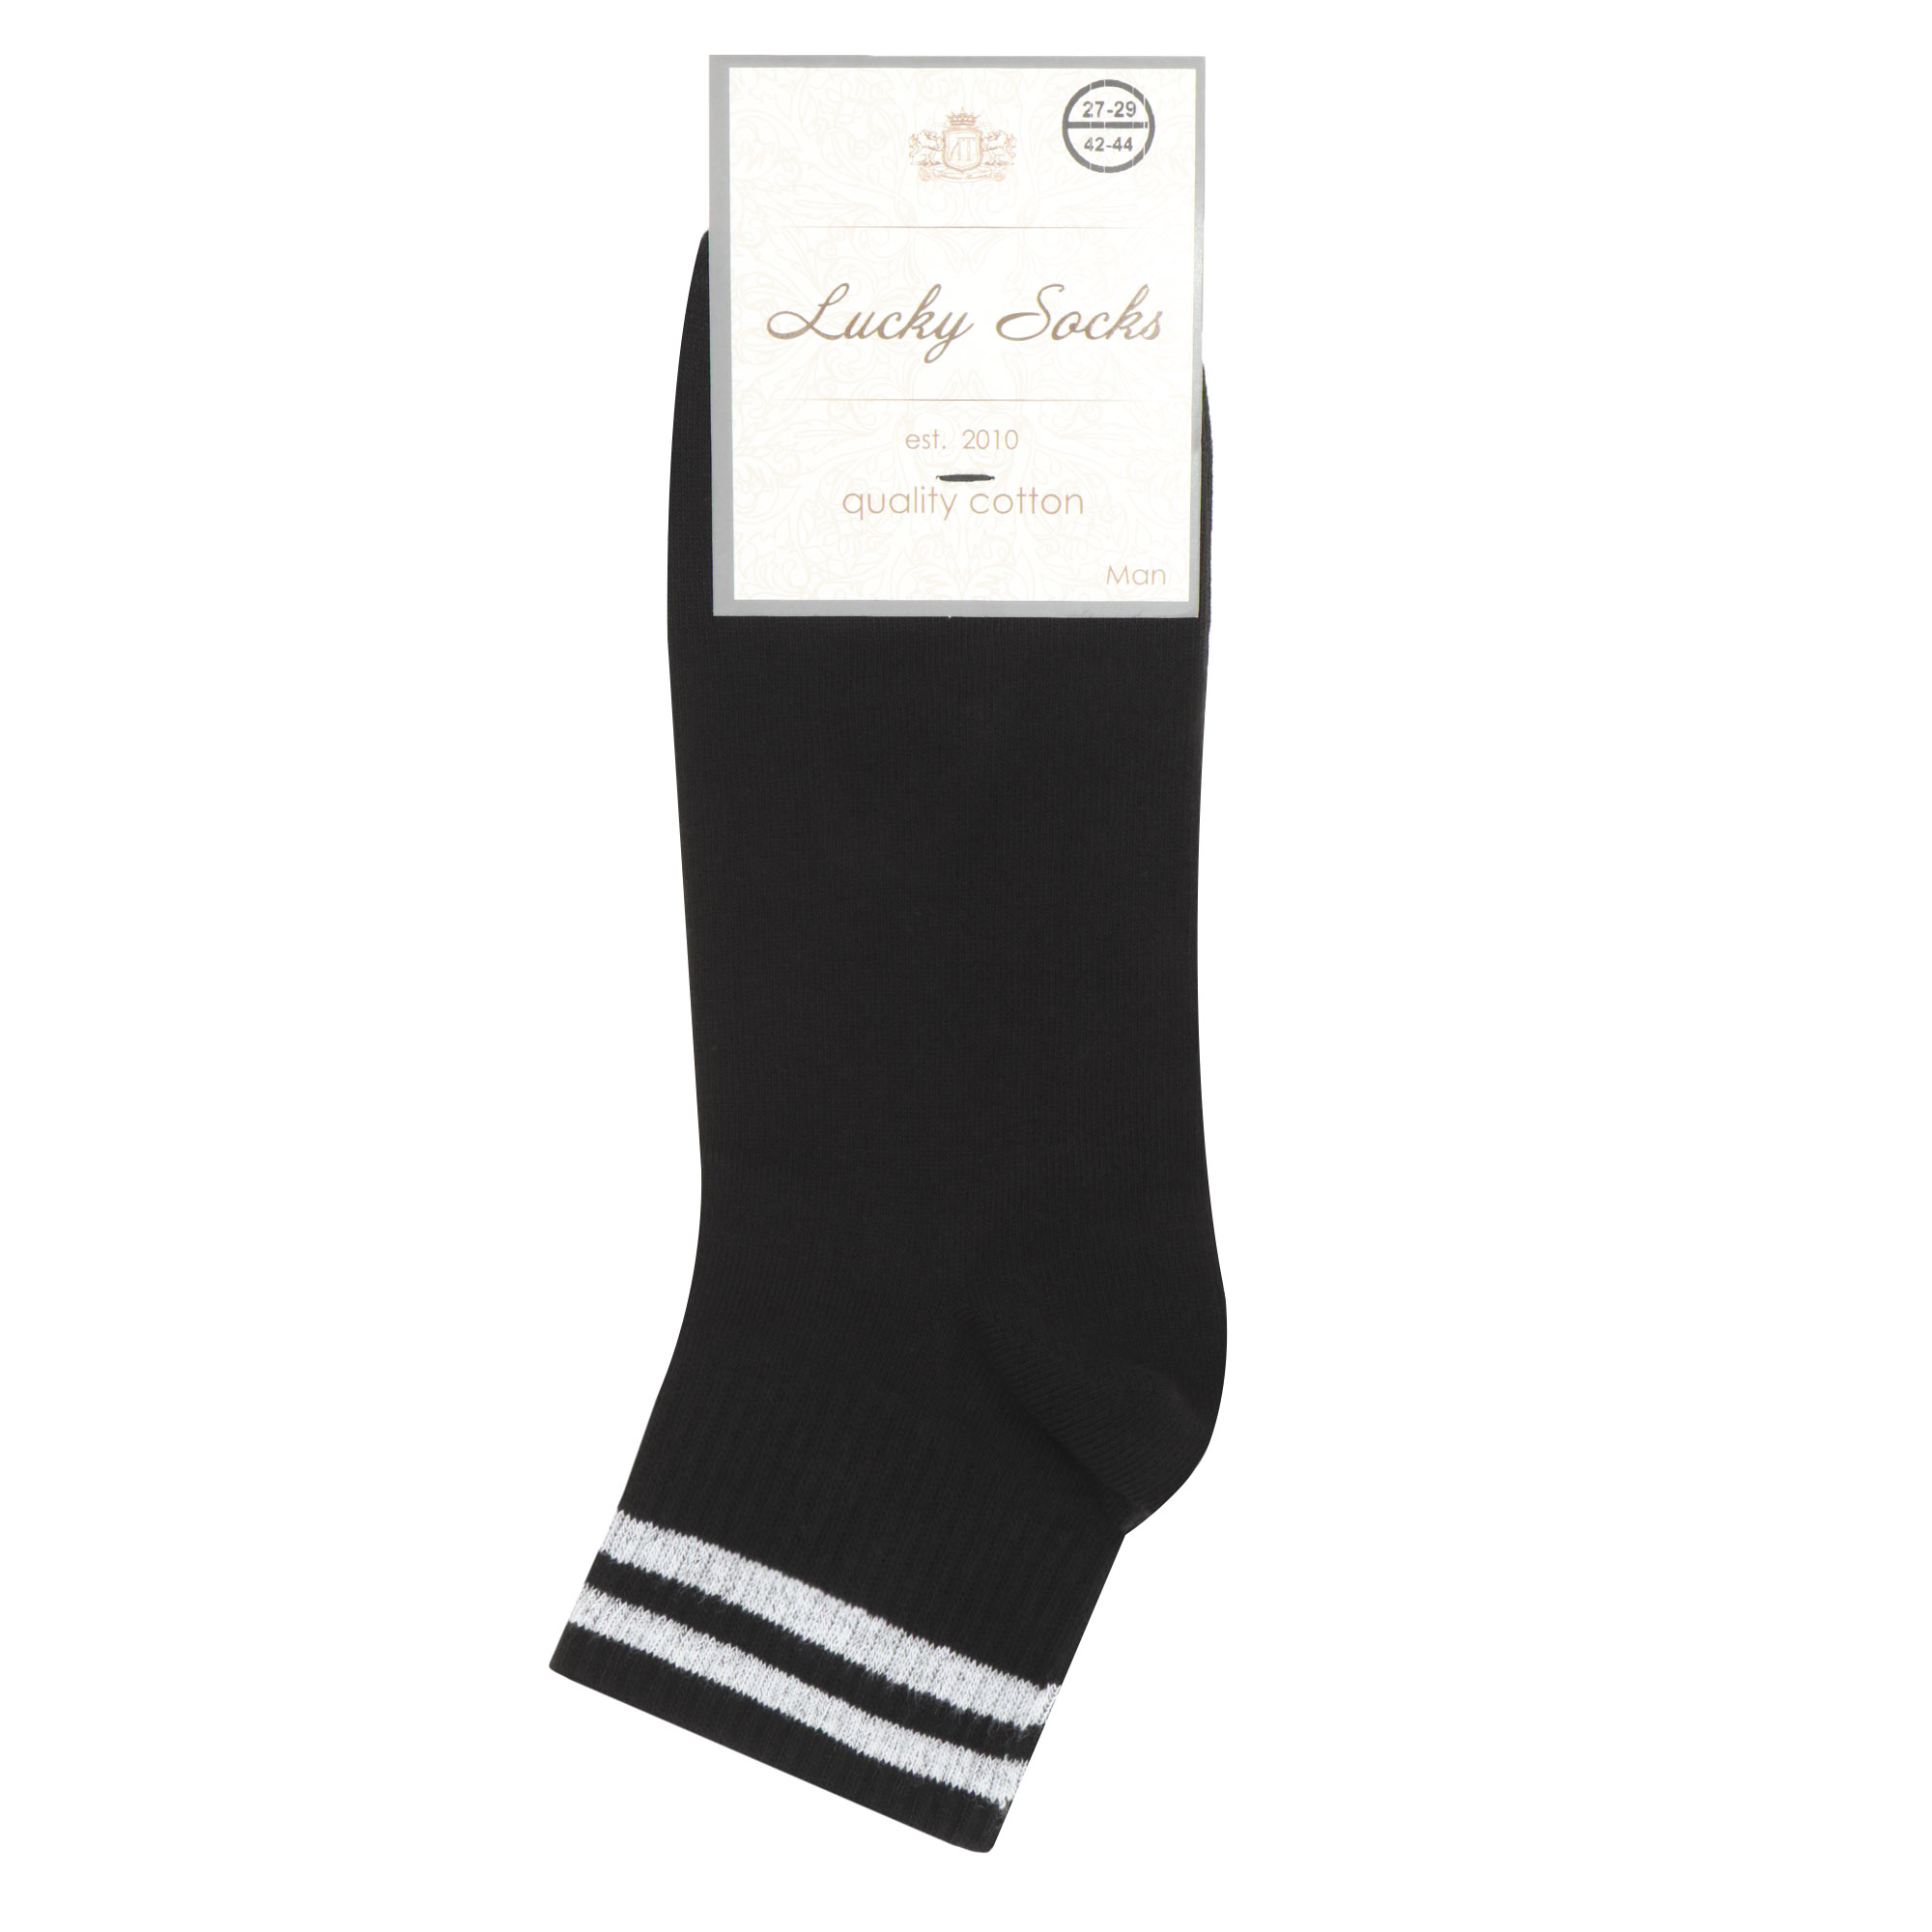 Носки мужские Lucky Socks НМГ-0131 черно-белые  27-29, цвет черный, размер 27-29 - фото 1